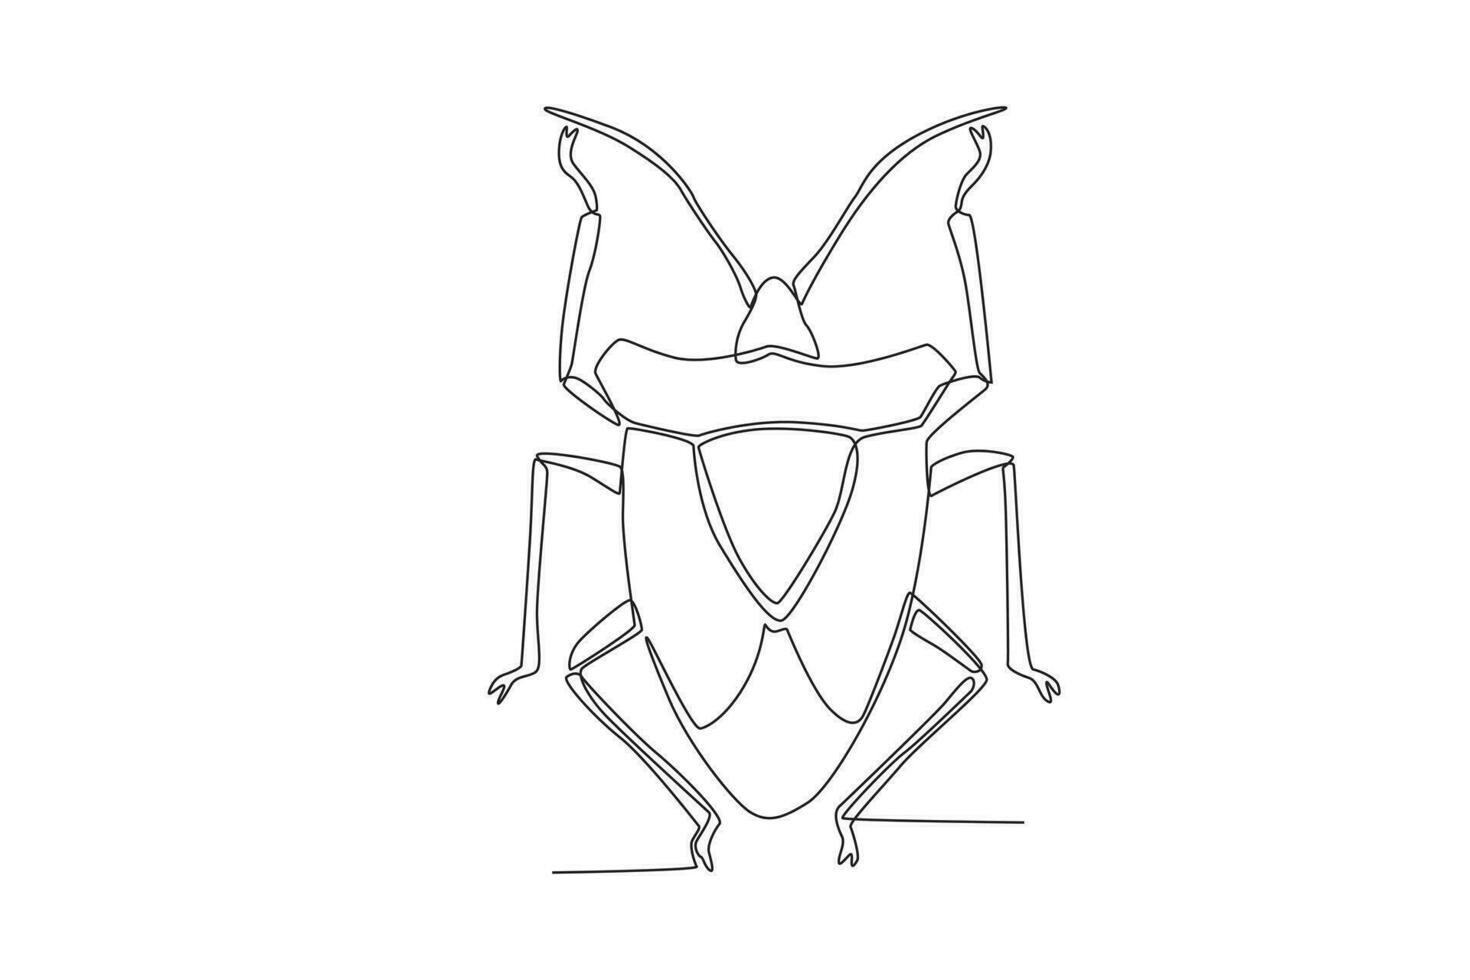 ein Single kontinuierlich Linie Zeichnung von ein groß Käfer zum das Bauernhof Logo Identität. Single Linie Zeichnung Grafik Design Vektor Illustration